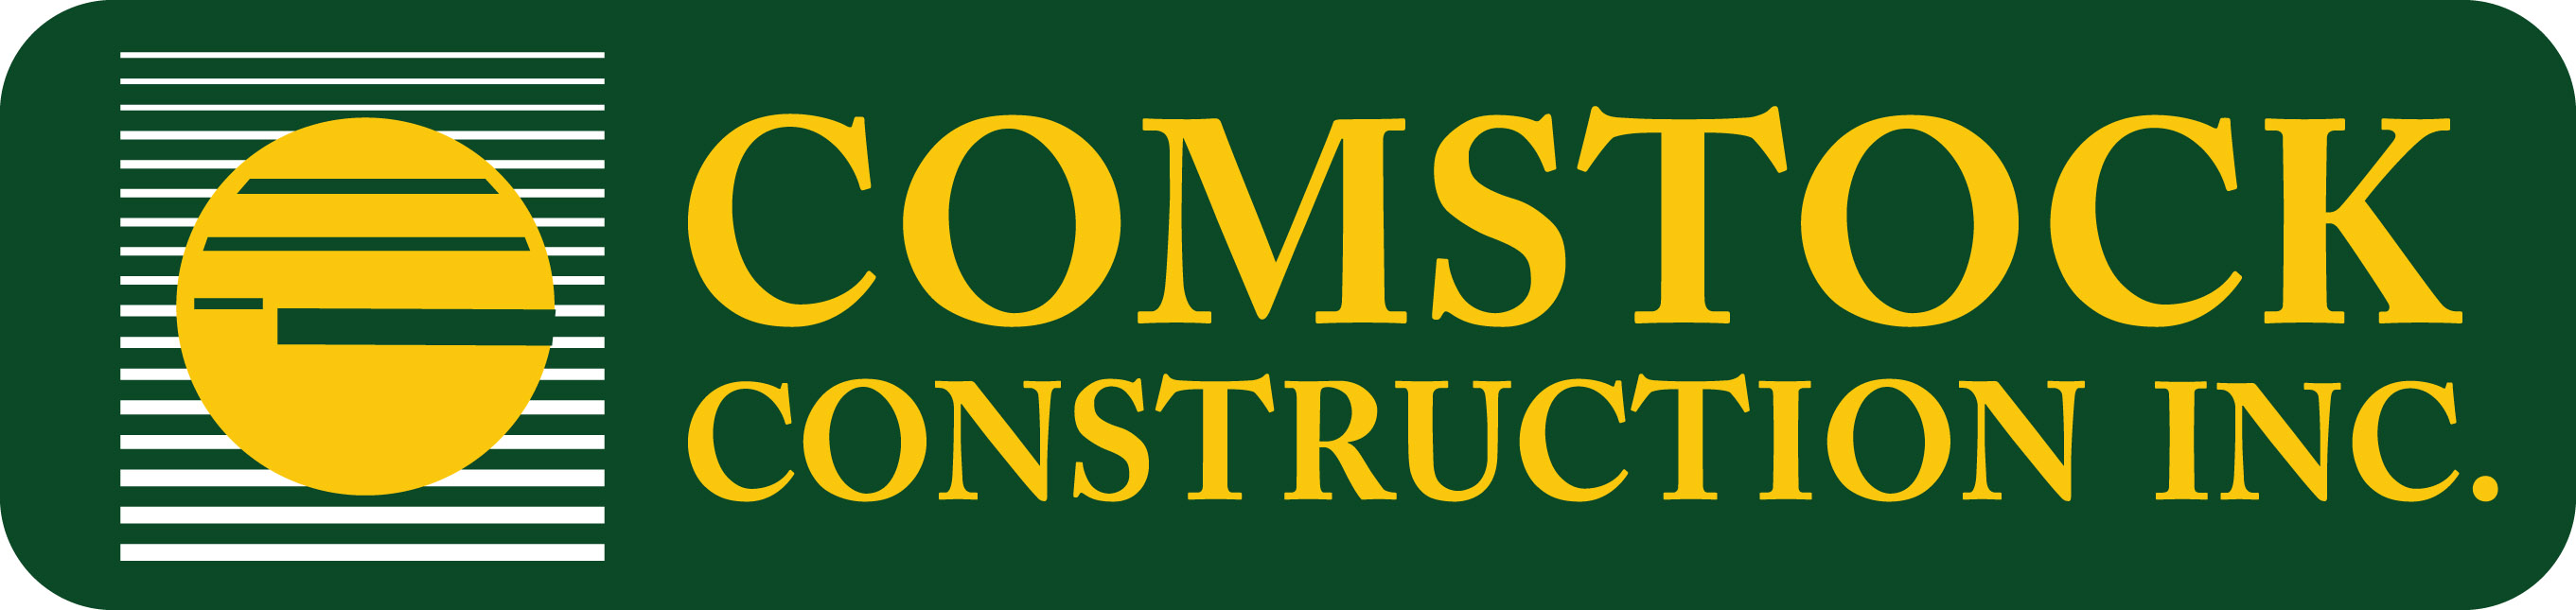 Comstock Construction Company